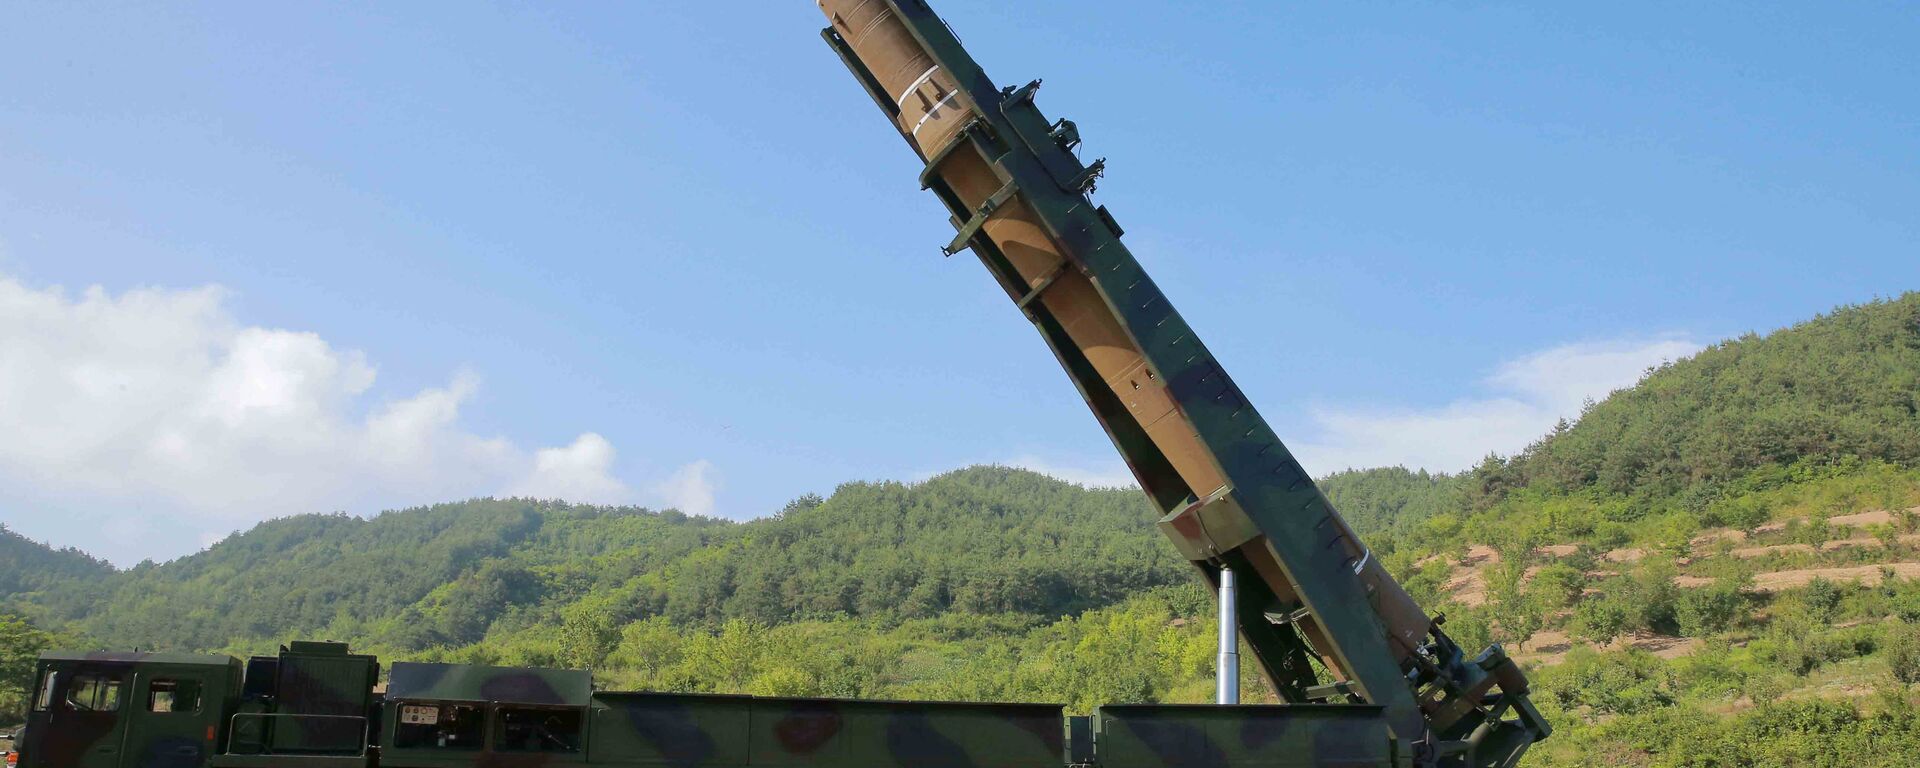 Imagem do Hwasong-14, míssil que a Coreia do Norte afirma ser de longo alcance (intercontinental), em teste realizado em 4 de julho de 2017 - Sputnik Brasil, 1920, 28.12.2021